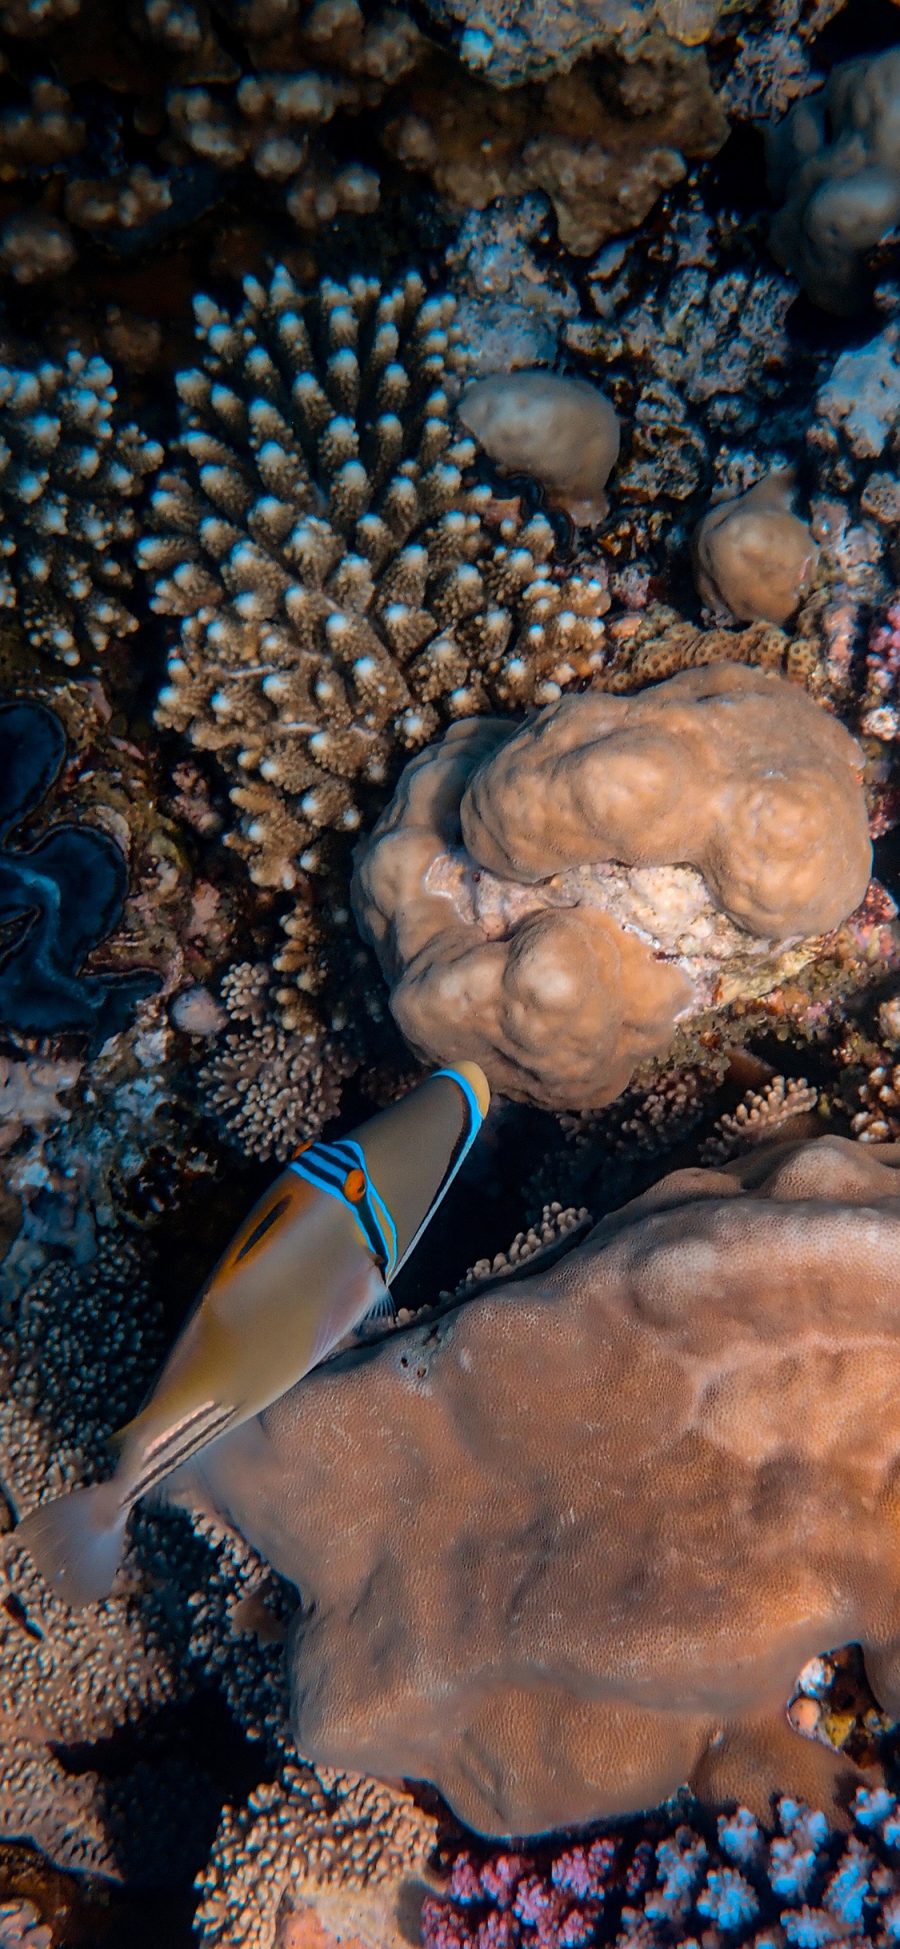 [2436×1125]海底世界 海洋生物 海鱼 珊瑚 苹果手机壁纸图片